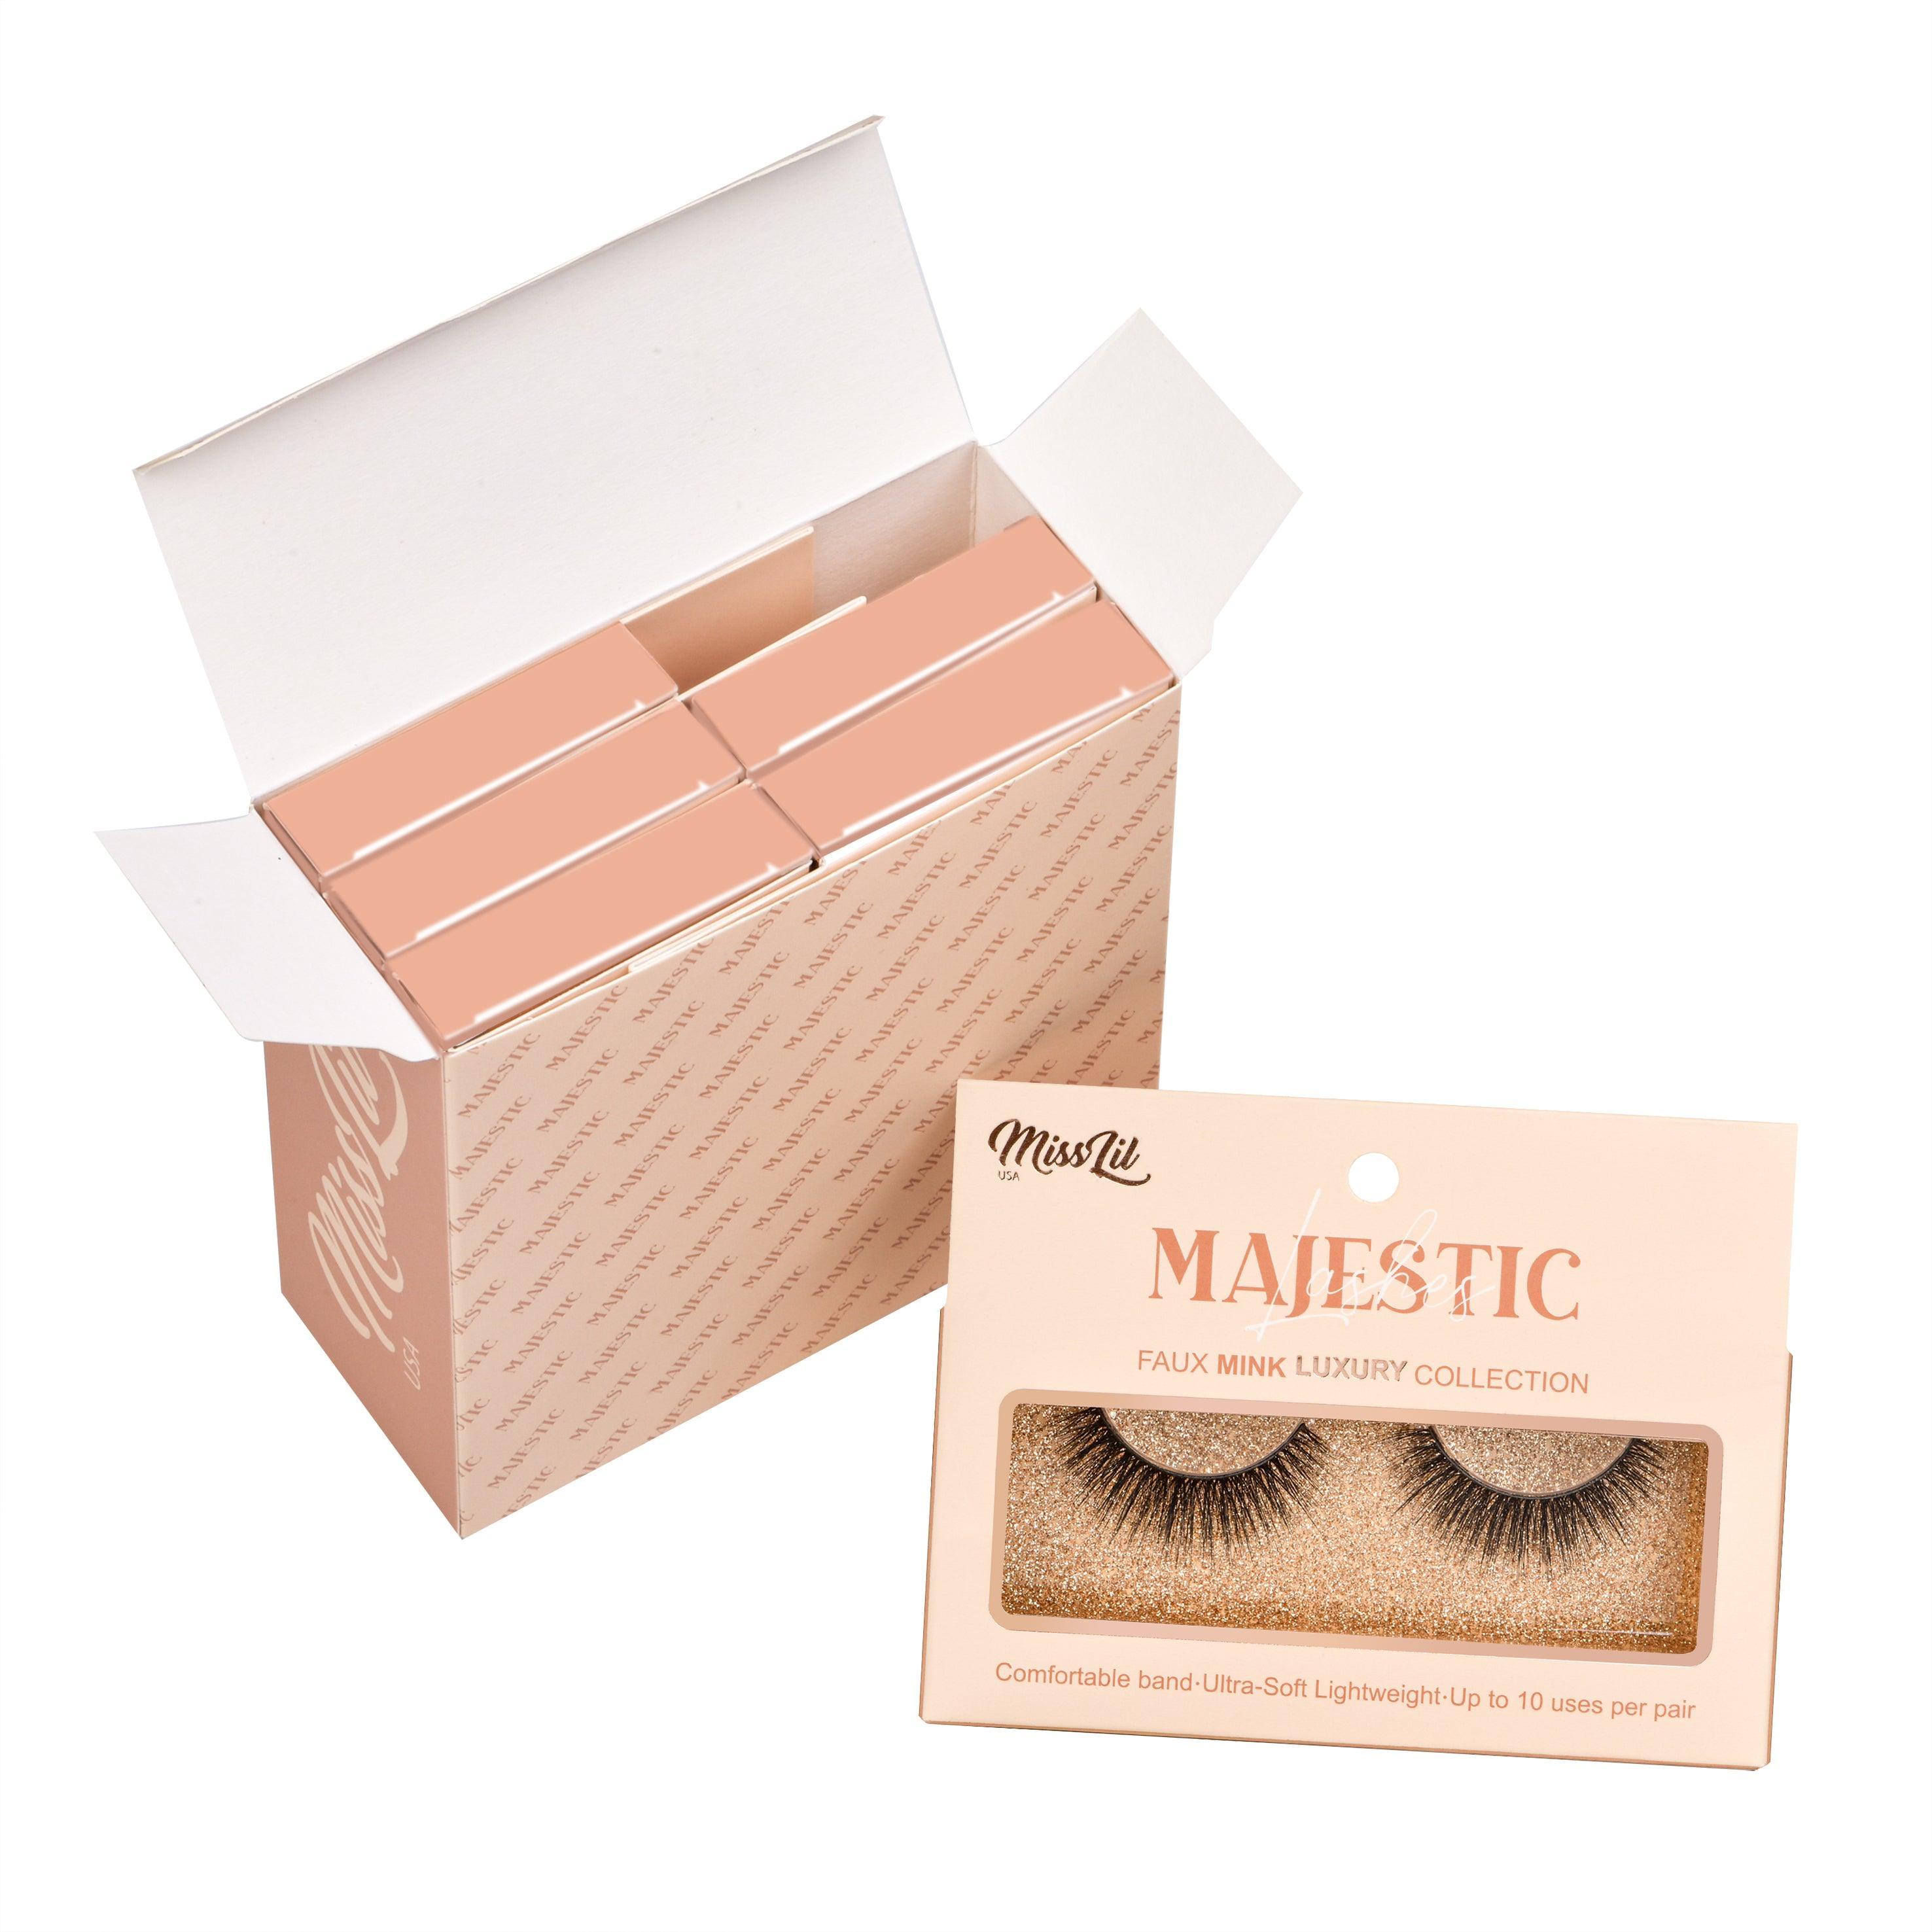 Majestic Collection 16 False Eyelashes - Miss Lil USA Wholesale